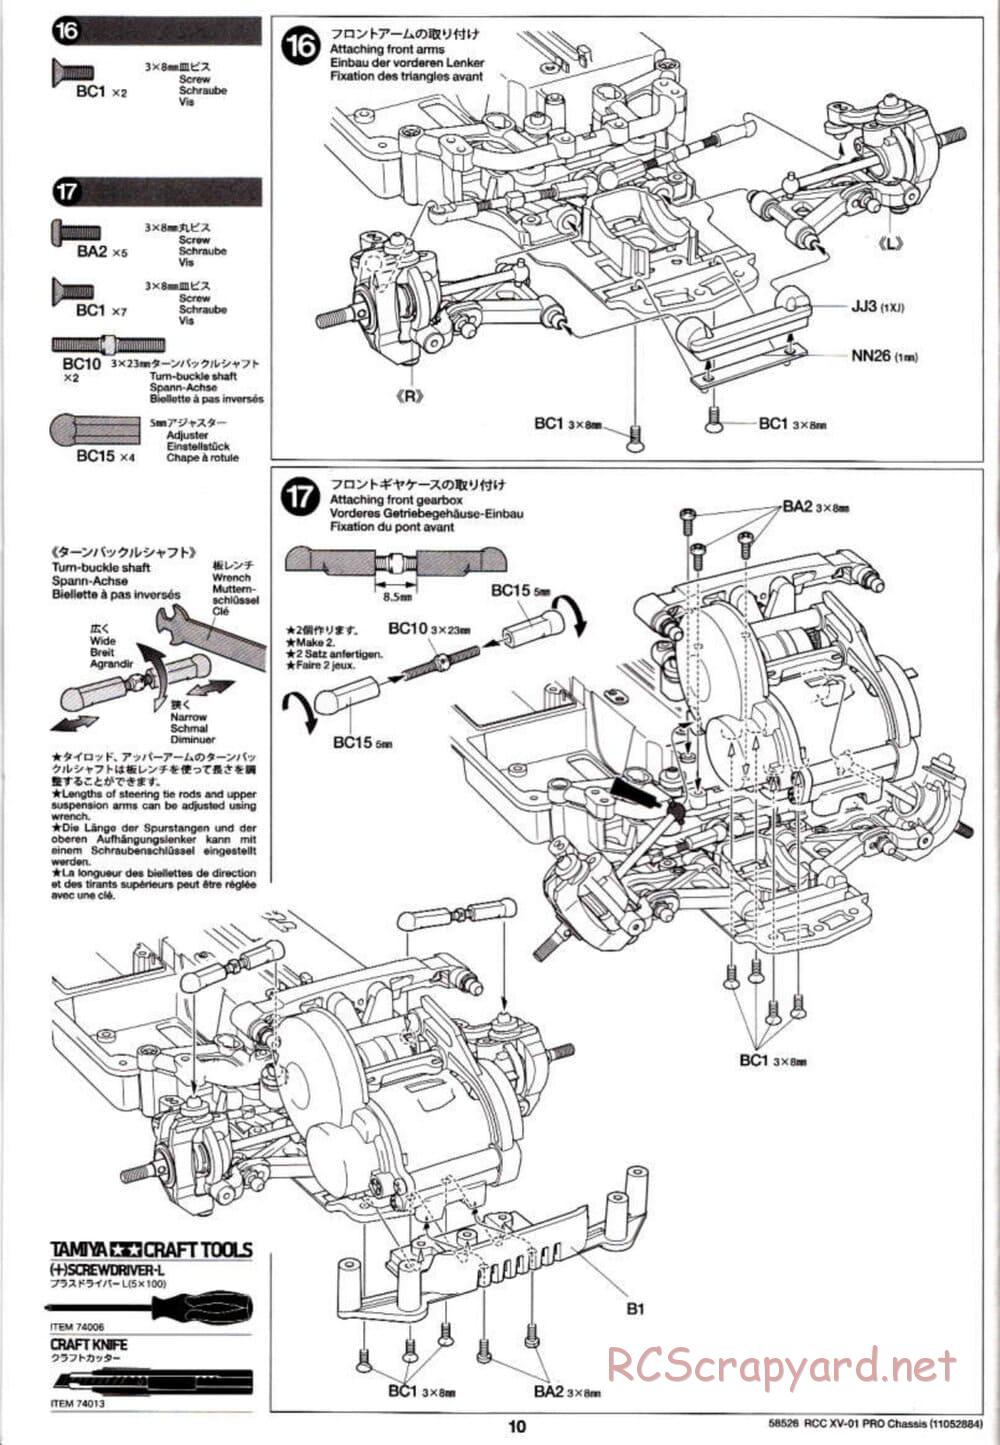 Tamiya - XV-01 PRO Chassis - Manual - Page 10